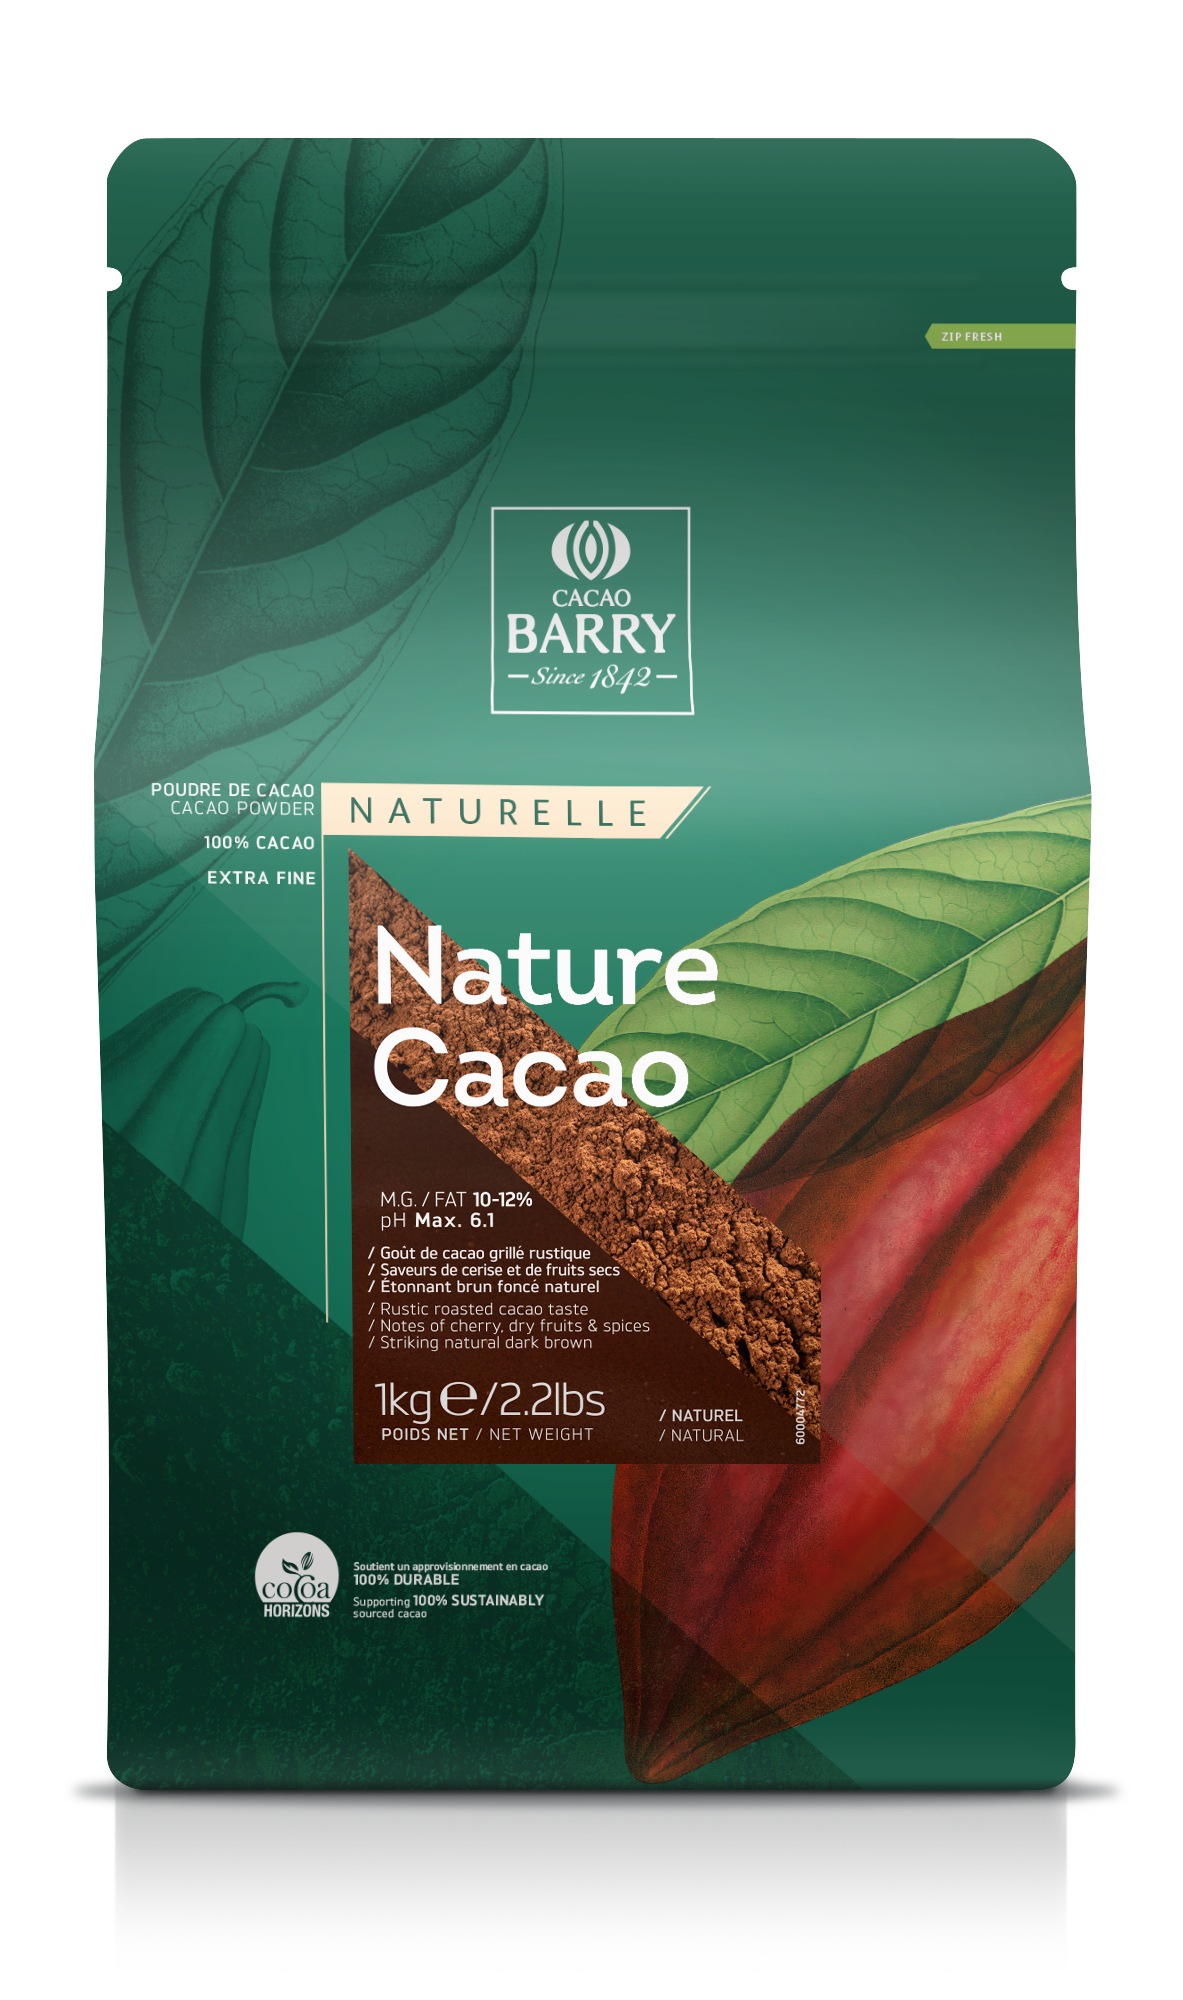 Cacao Barry - Nature Cacao | chocolate-academy.com